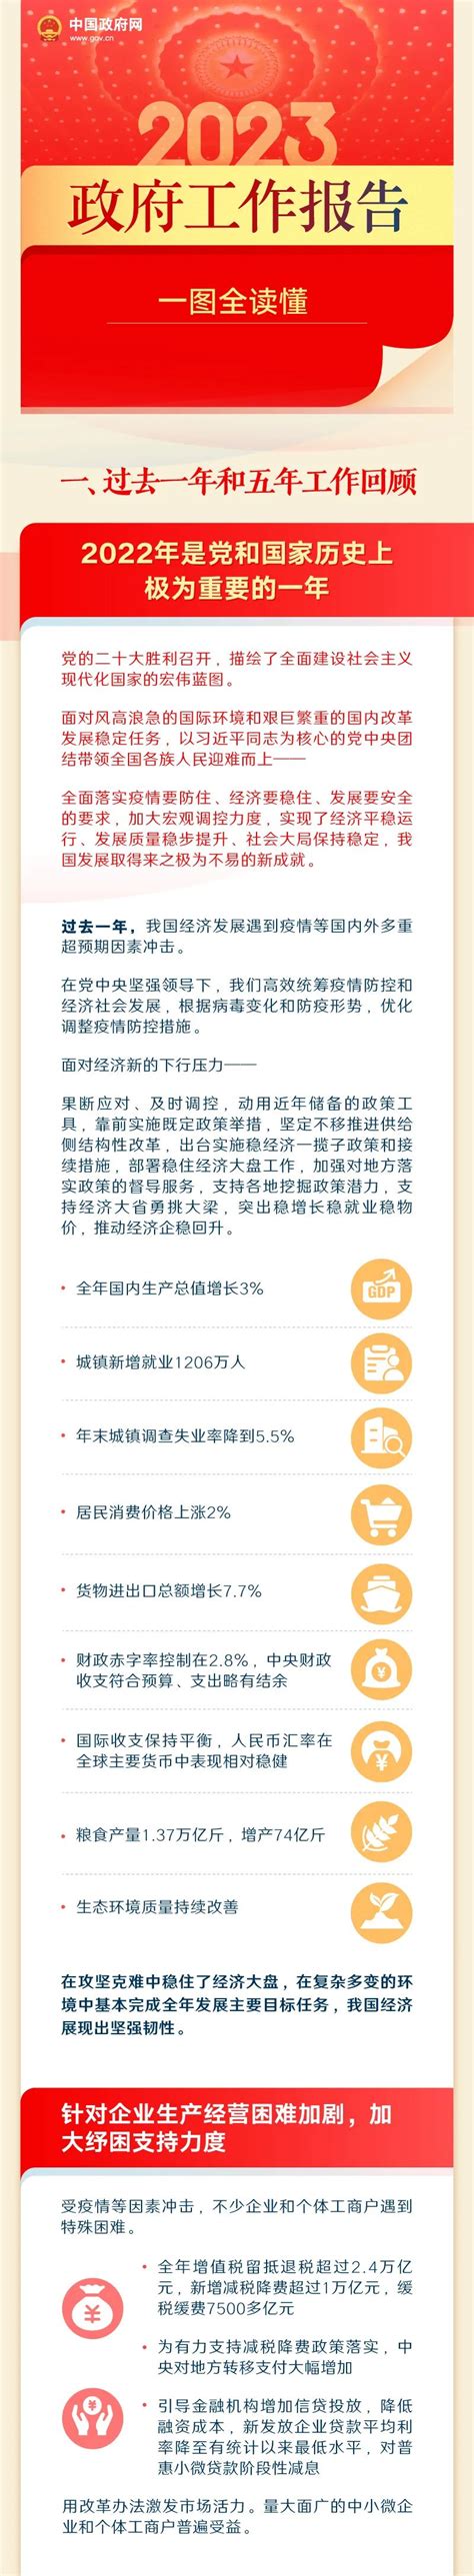 【图解】 2022年政府工作报告 - 洋县人民政府